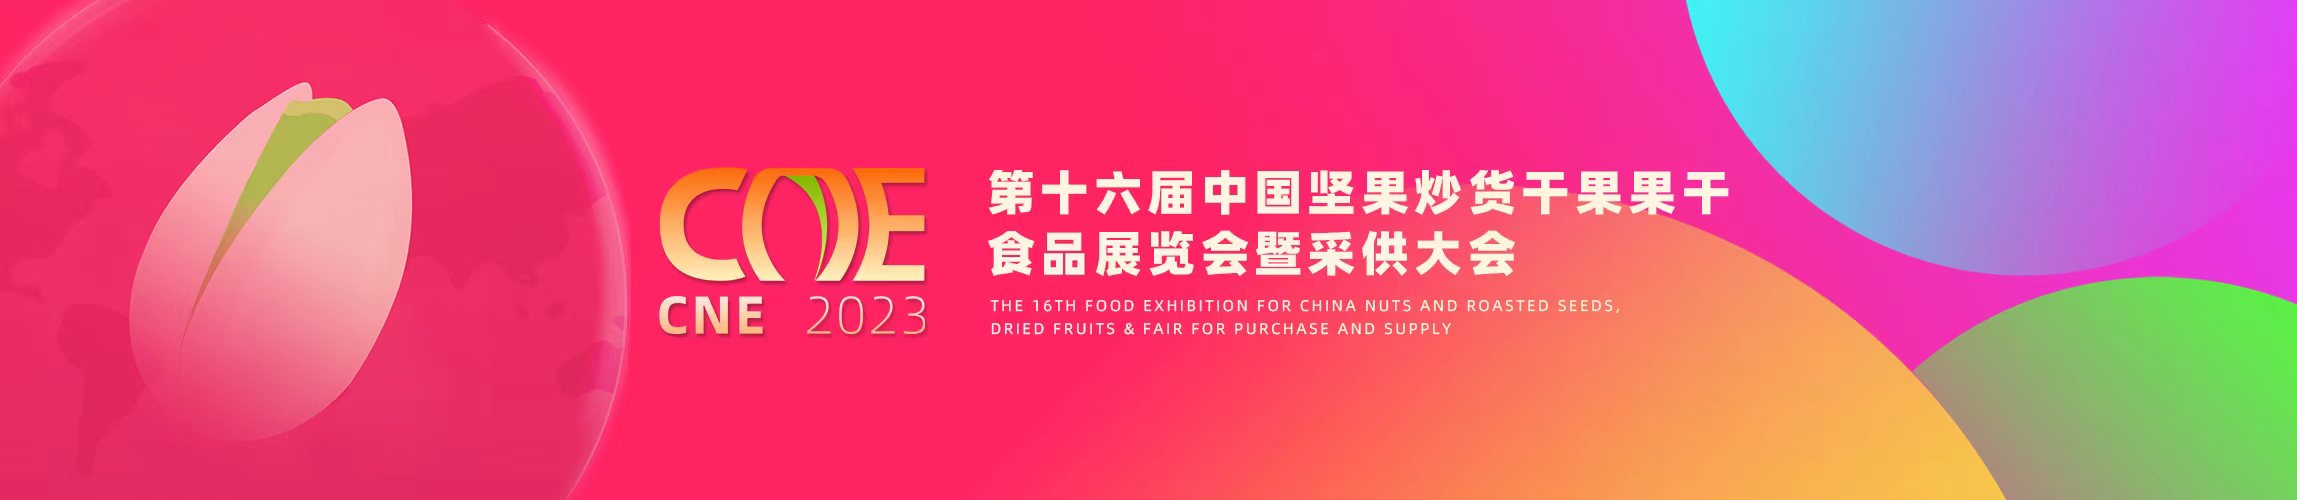 2023第十七届中国粽子文化节暨节令食品展览会(www.828i.com)